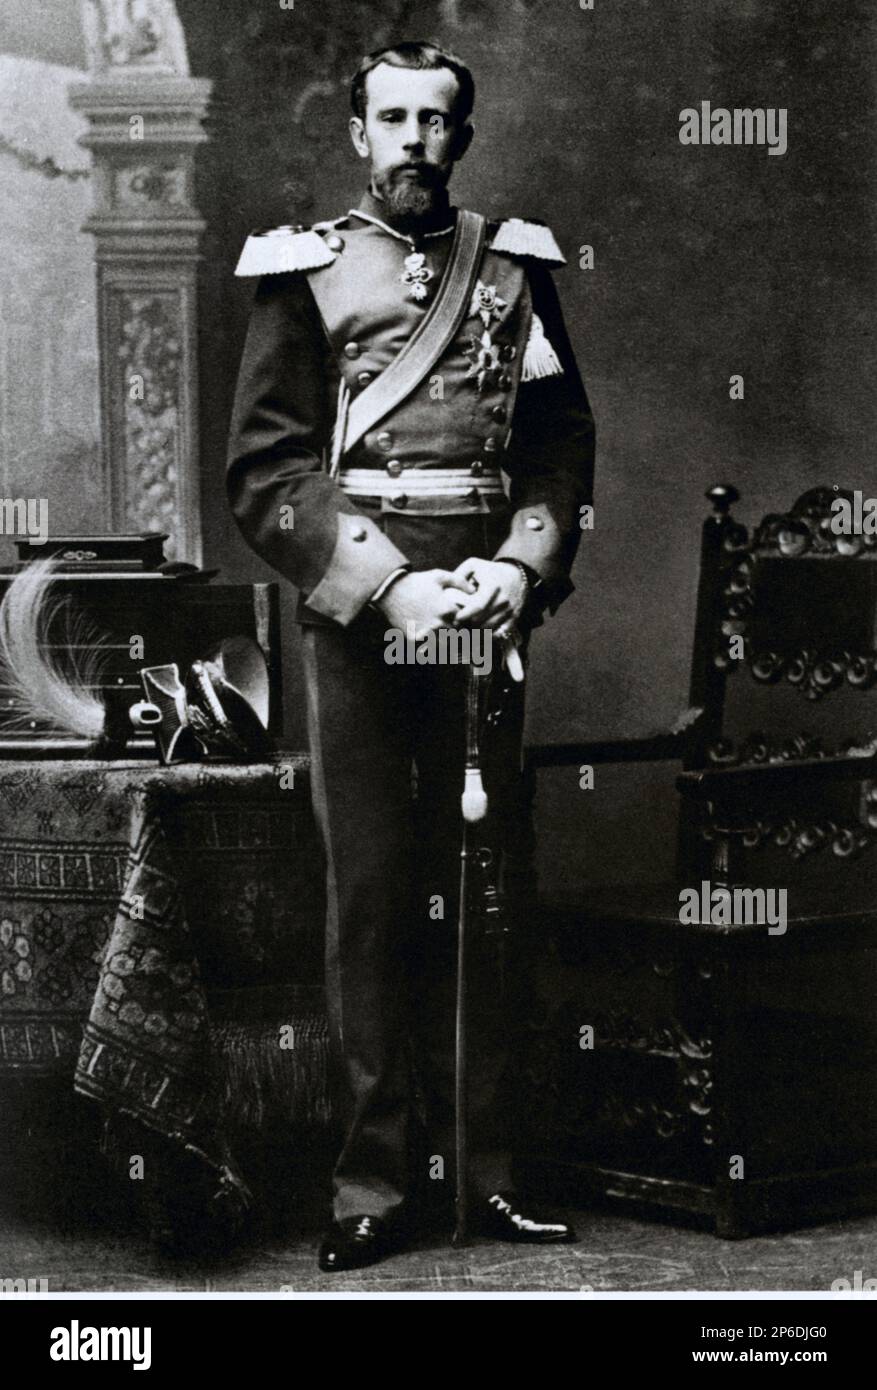 1886 , Wien , Österreich : der österreichische kronprinz RUDOLF von ABSBURG ( 1850 - beging Selbstmord in Mayerling 1889 ) , die Geliebte von Mary von Vetsera , Sohn von Kaiser Franz Josef ( 1830 - 1916 ) , Kaiser von Österreich , König von Ungarn und Böhmen und Kaiserin Elisabeth von Bayer ( SISSI , 1937 - 1898 ). - FRANCESCO GIUSEPPE - JOSEPH - ABSBURG - ASBURG - ASBURGO - ADEL - NOBILI - Nobiltà - REALI - HABSBURG - HASBURG - KÖNIGSFAMILIE - Divisa militare - Militäruniform - Baffi - Schnurrbart - principe ereditario - RODOLFO --- Archivio GBB Stockfoto